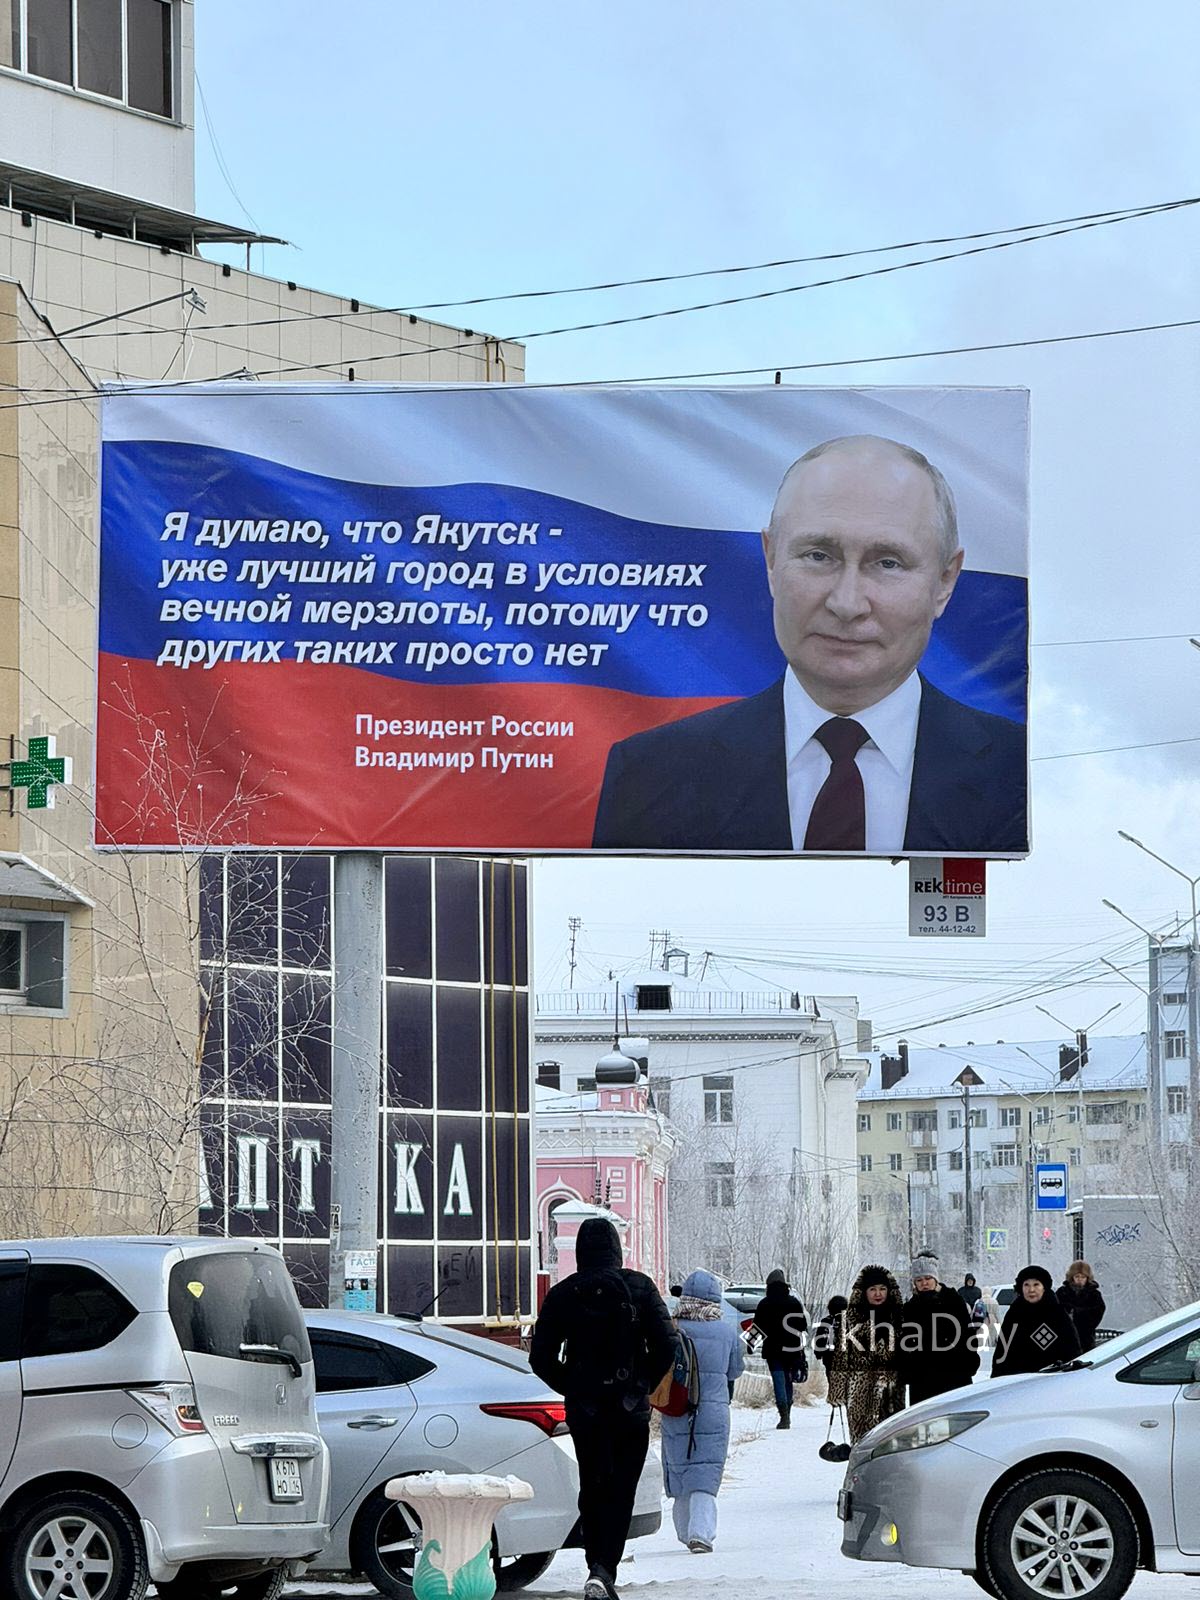 В Якутске разместили баннеры с цитатой Путина о лучшем городе на вечной мерзлоте